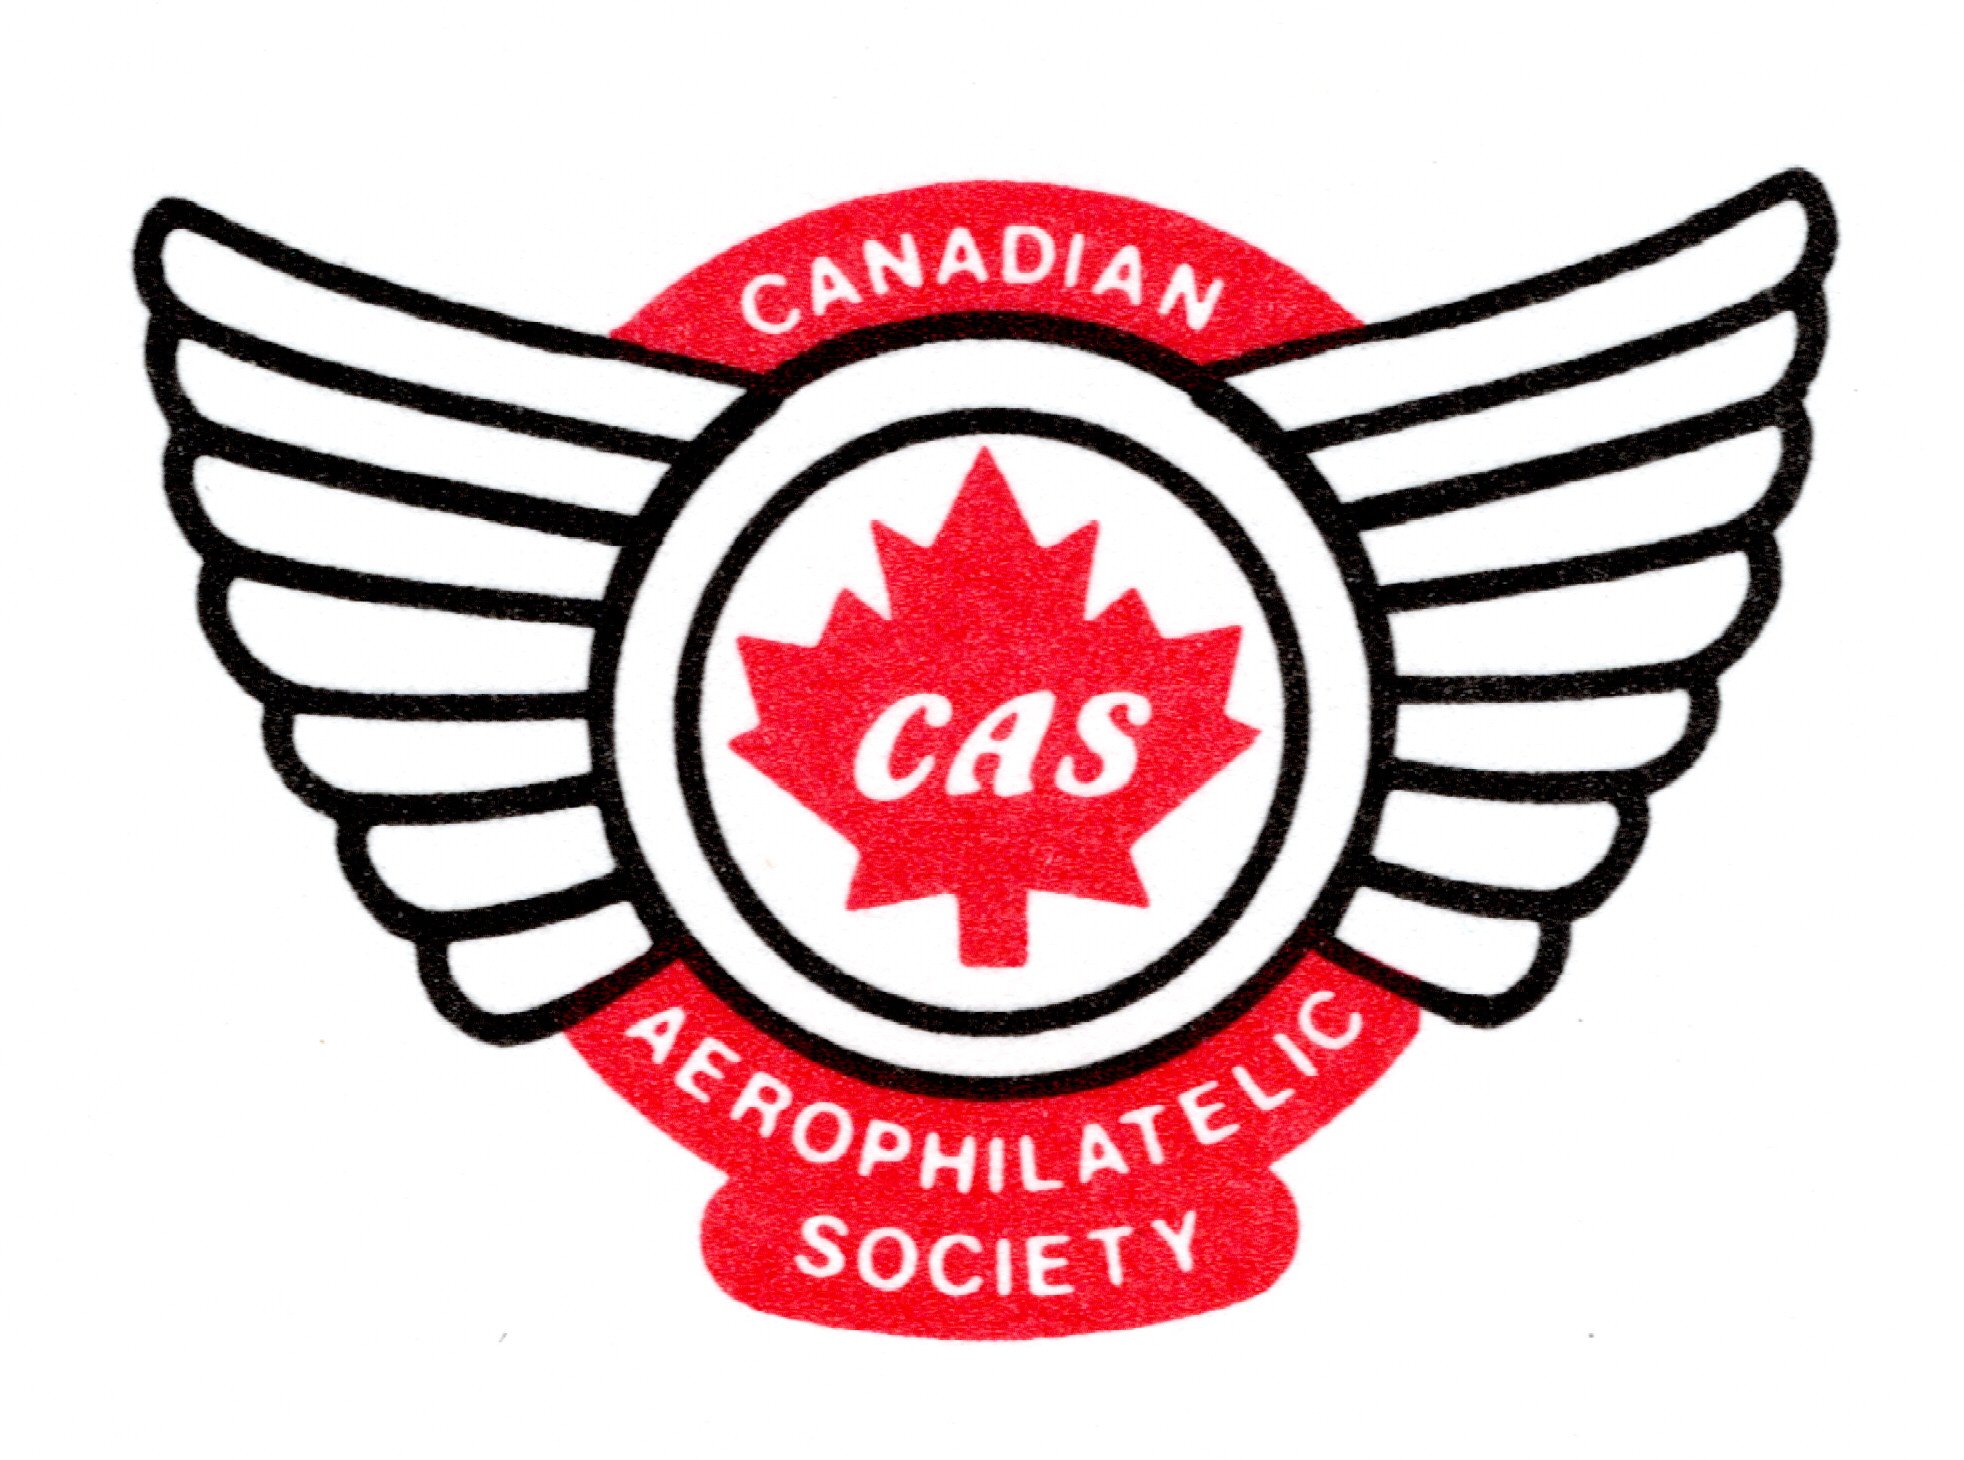 Pleins feux sur les sociétés : Société canadienne d’aérophilatélie